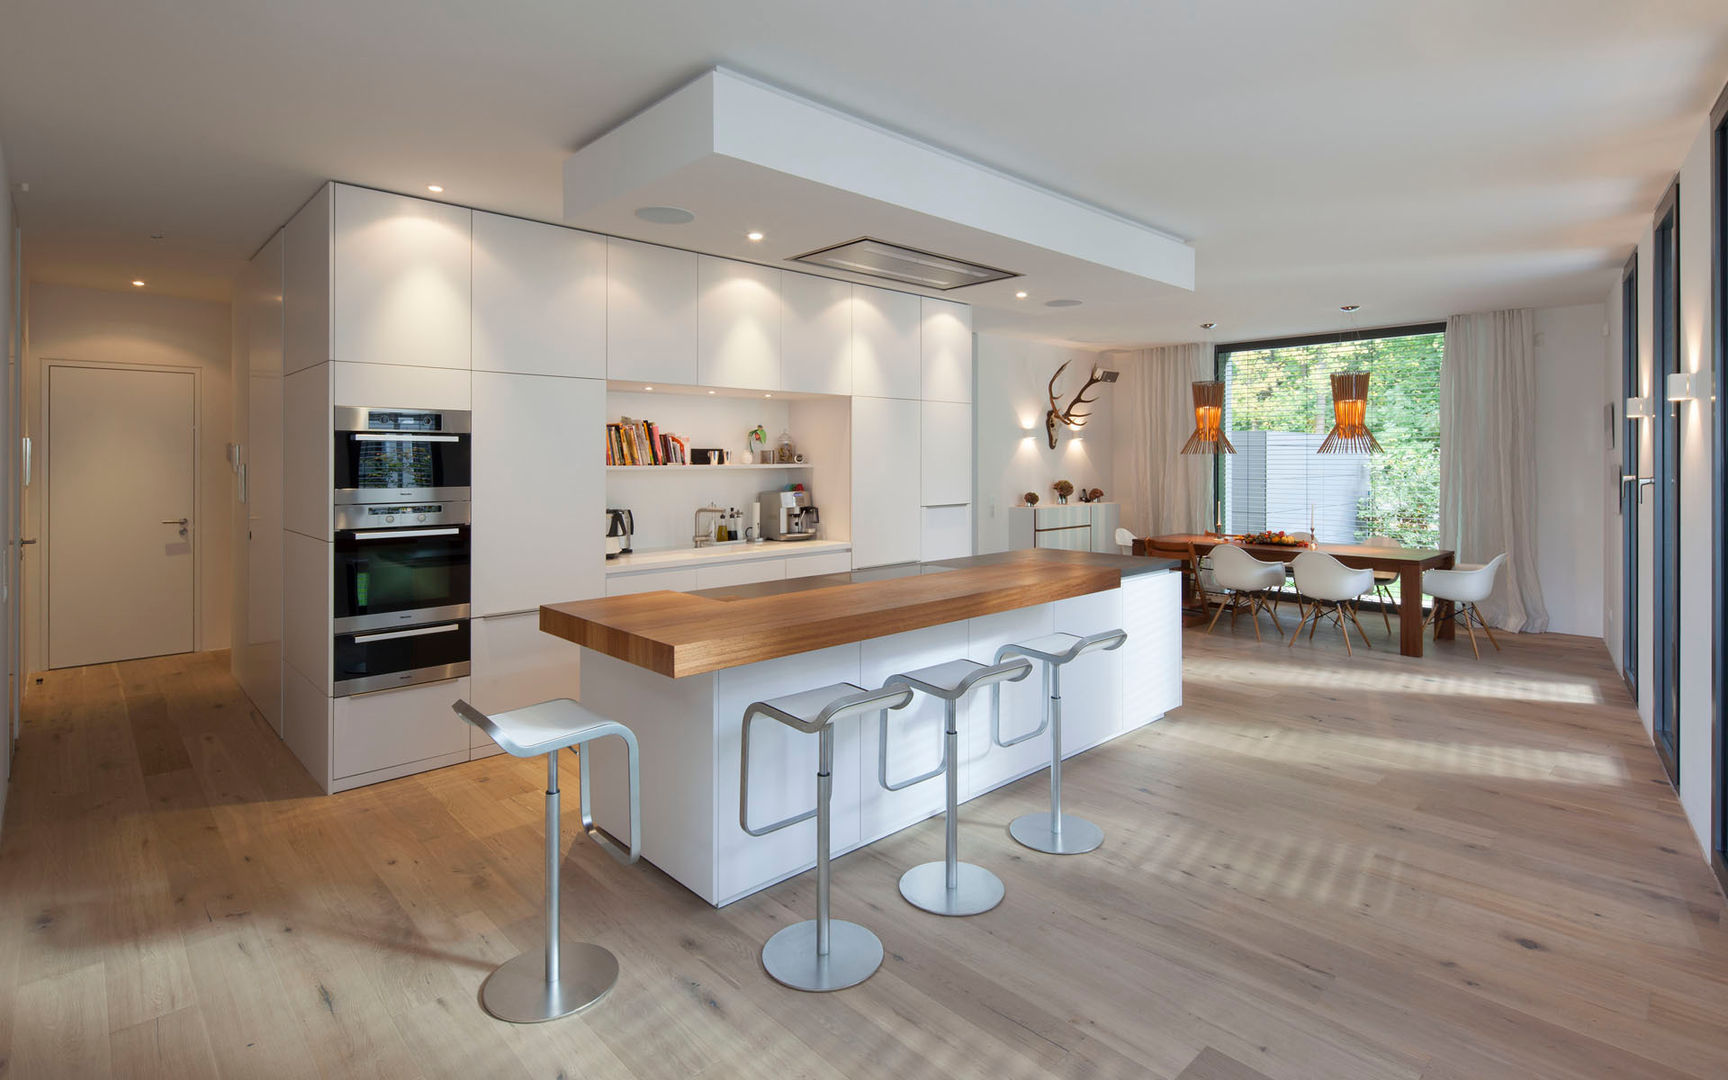 Küche S., rother küchenkonzepte + möbeldesign Gmbh rother küchenkonzepte + möbeldesign Gmbh Cozinhas modernas